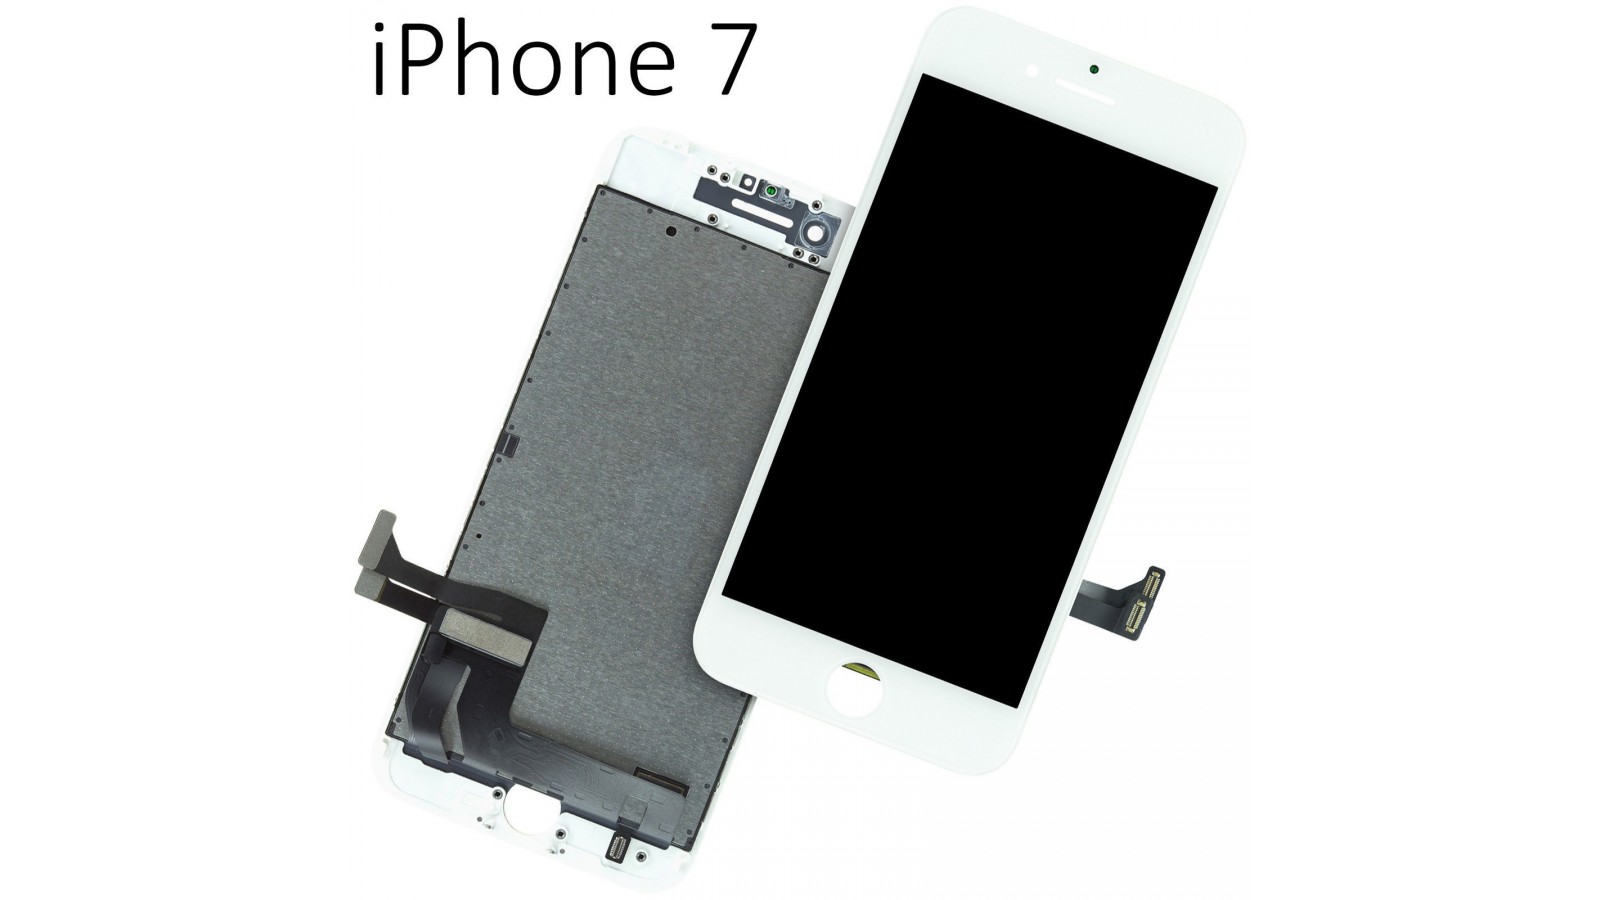 Display Lcd per Apple Iphone 7 bianco completo di Touch screen e cornice 